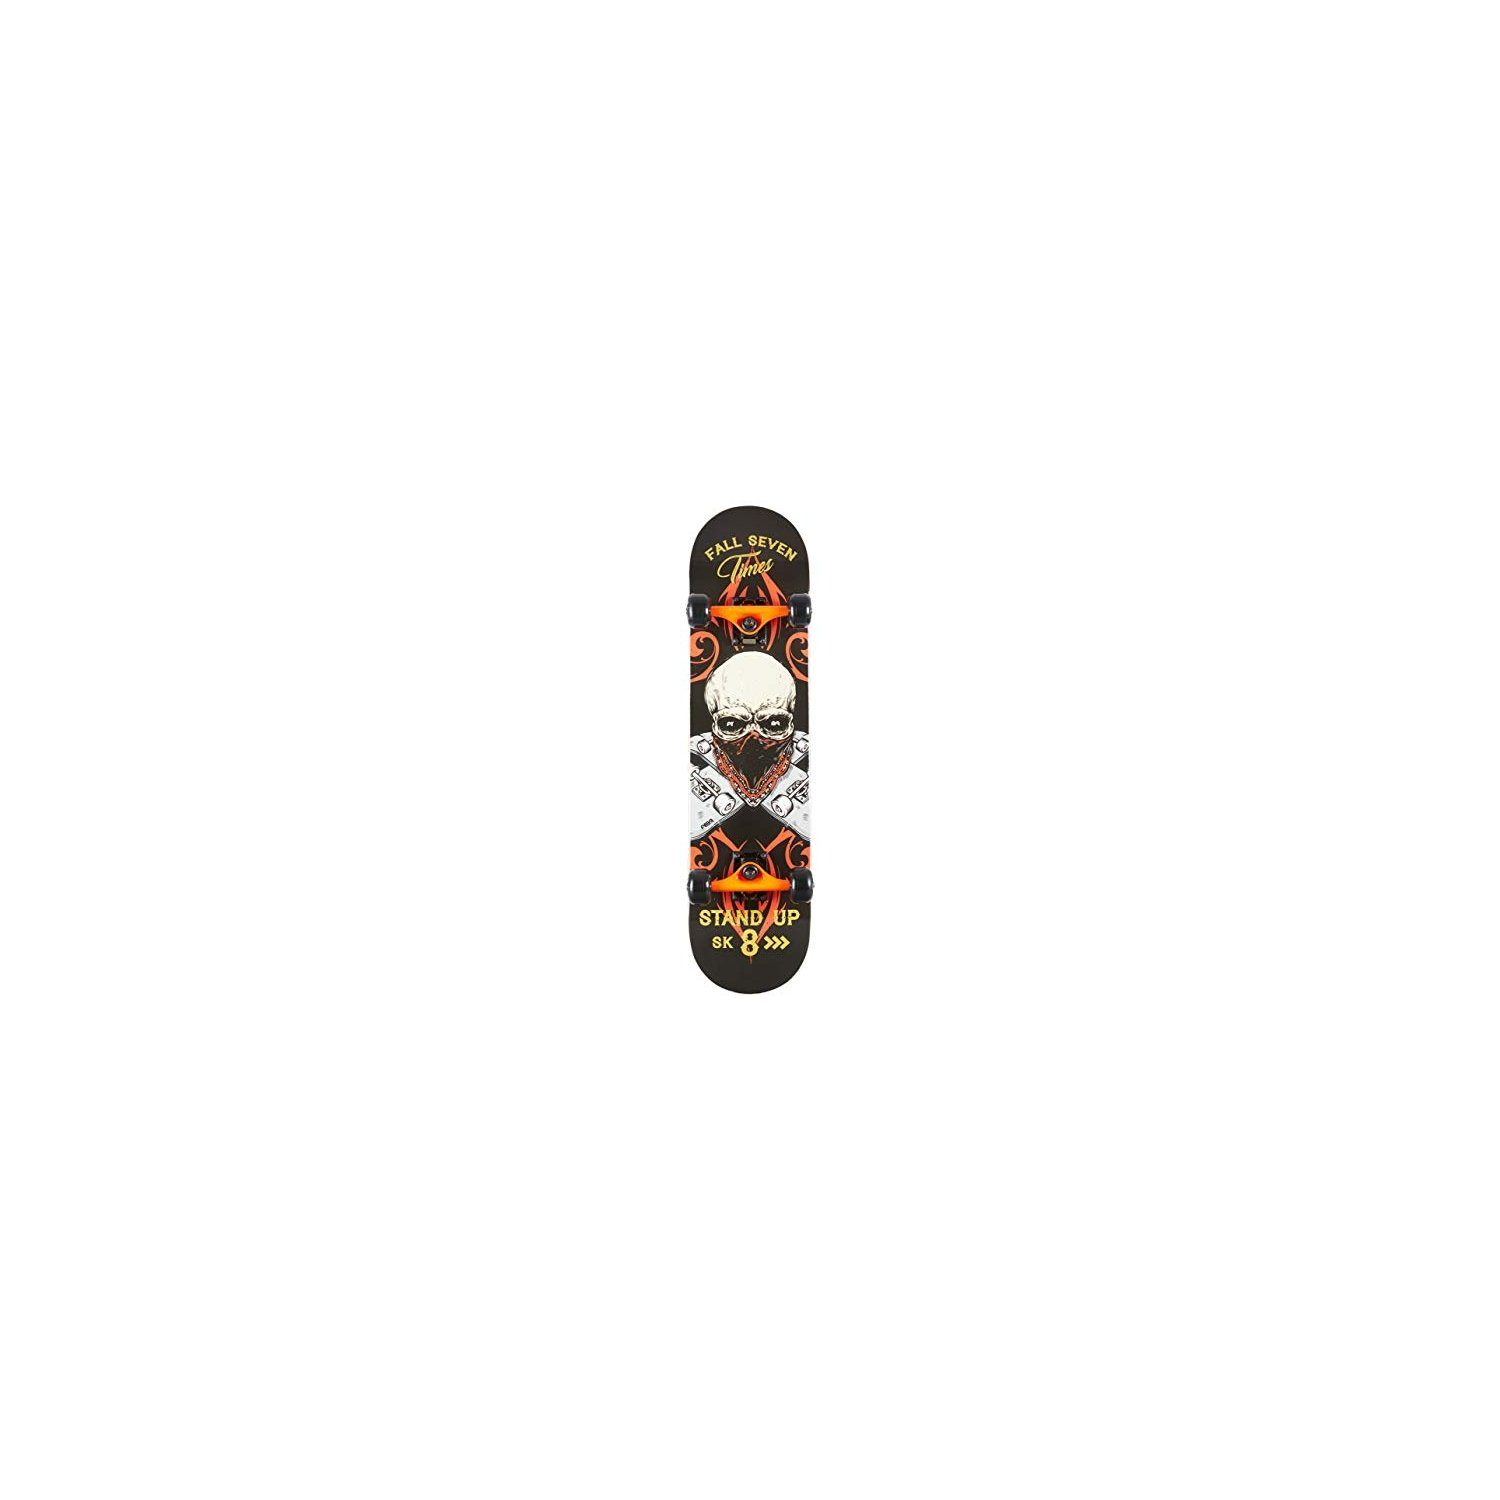 AREA17 Skateboard Skateboard Skateboard Stand Up - 000 - / -